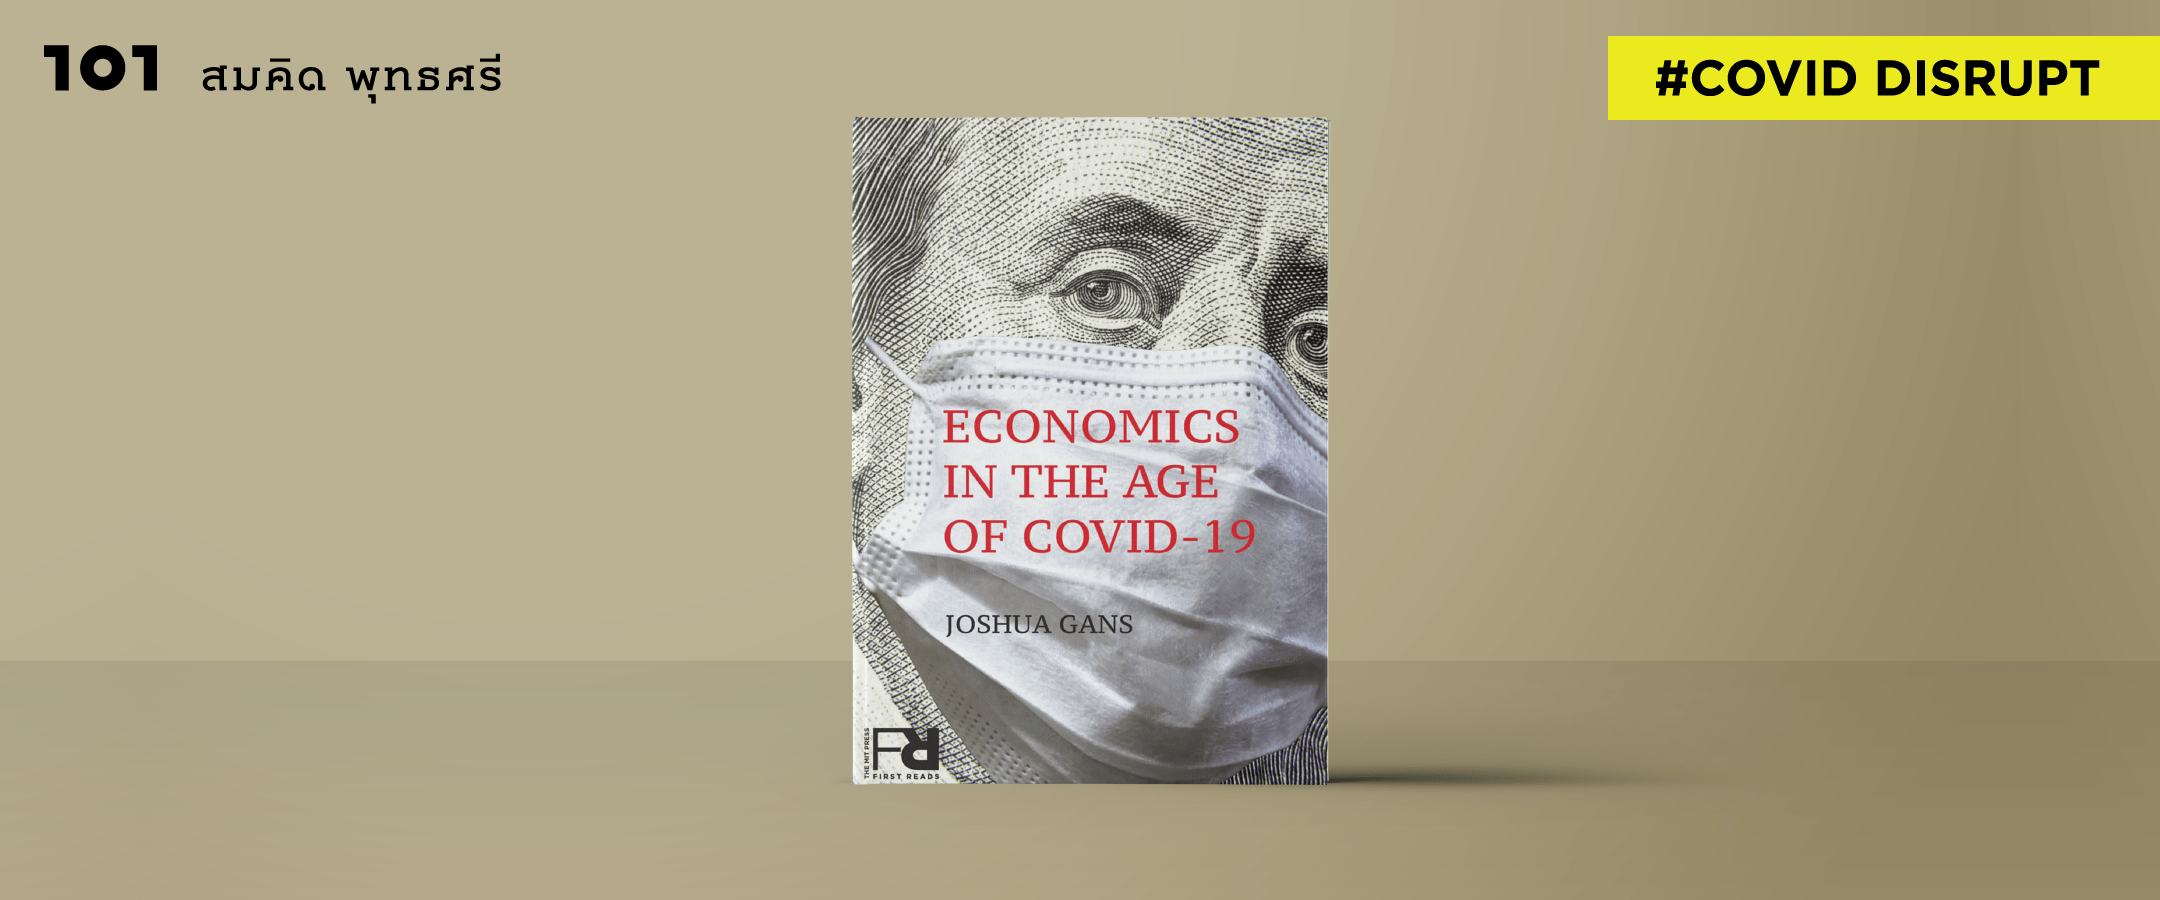 ‘เศรษฐกิจโรคระบาด’ : โมเดลเศรษฐกิจแบบใหม่หลังโควิด-19